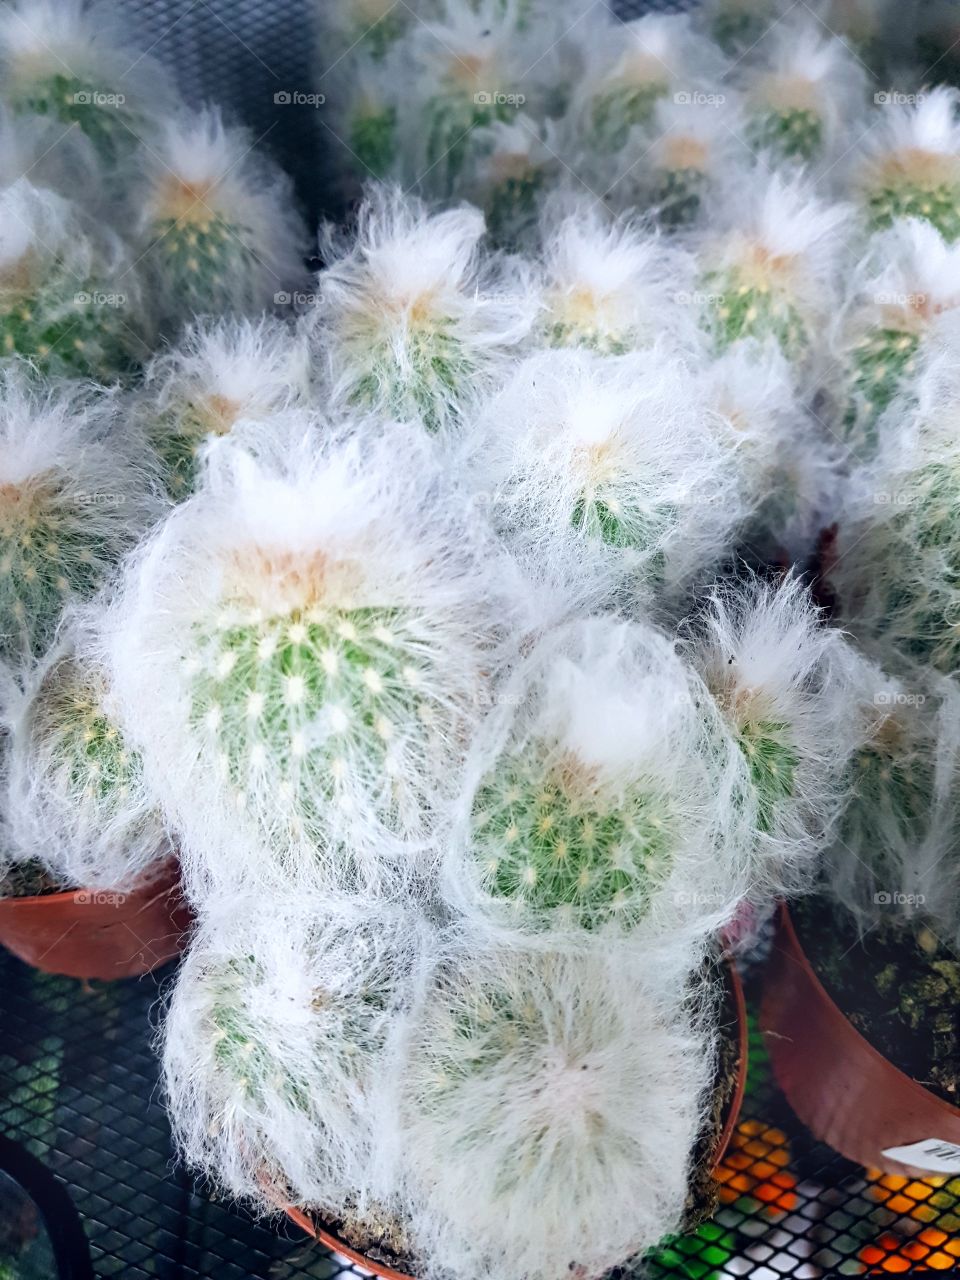 Decorative cactus